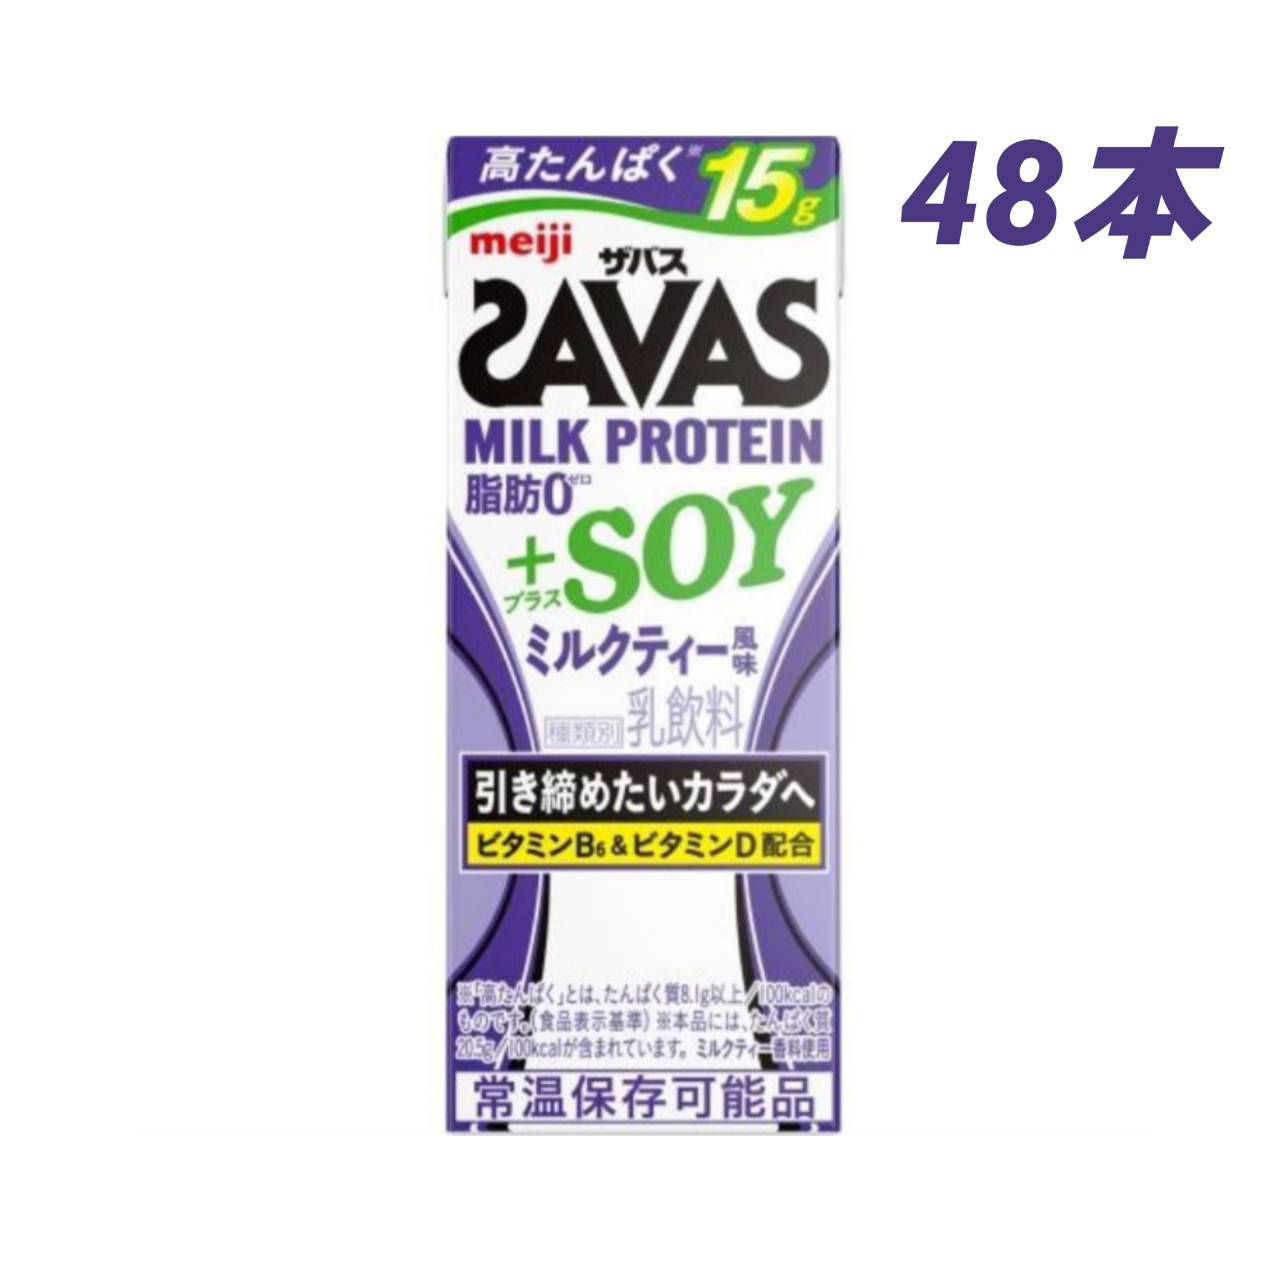 ザバス(SAVAS) ミルクプロテイン脂肪0 チョコレート風味 200ml×23